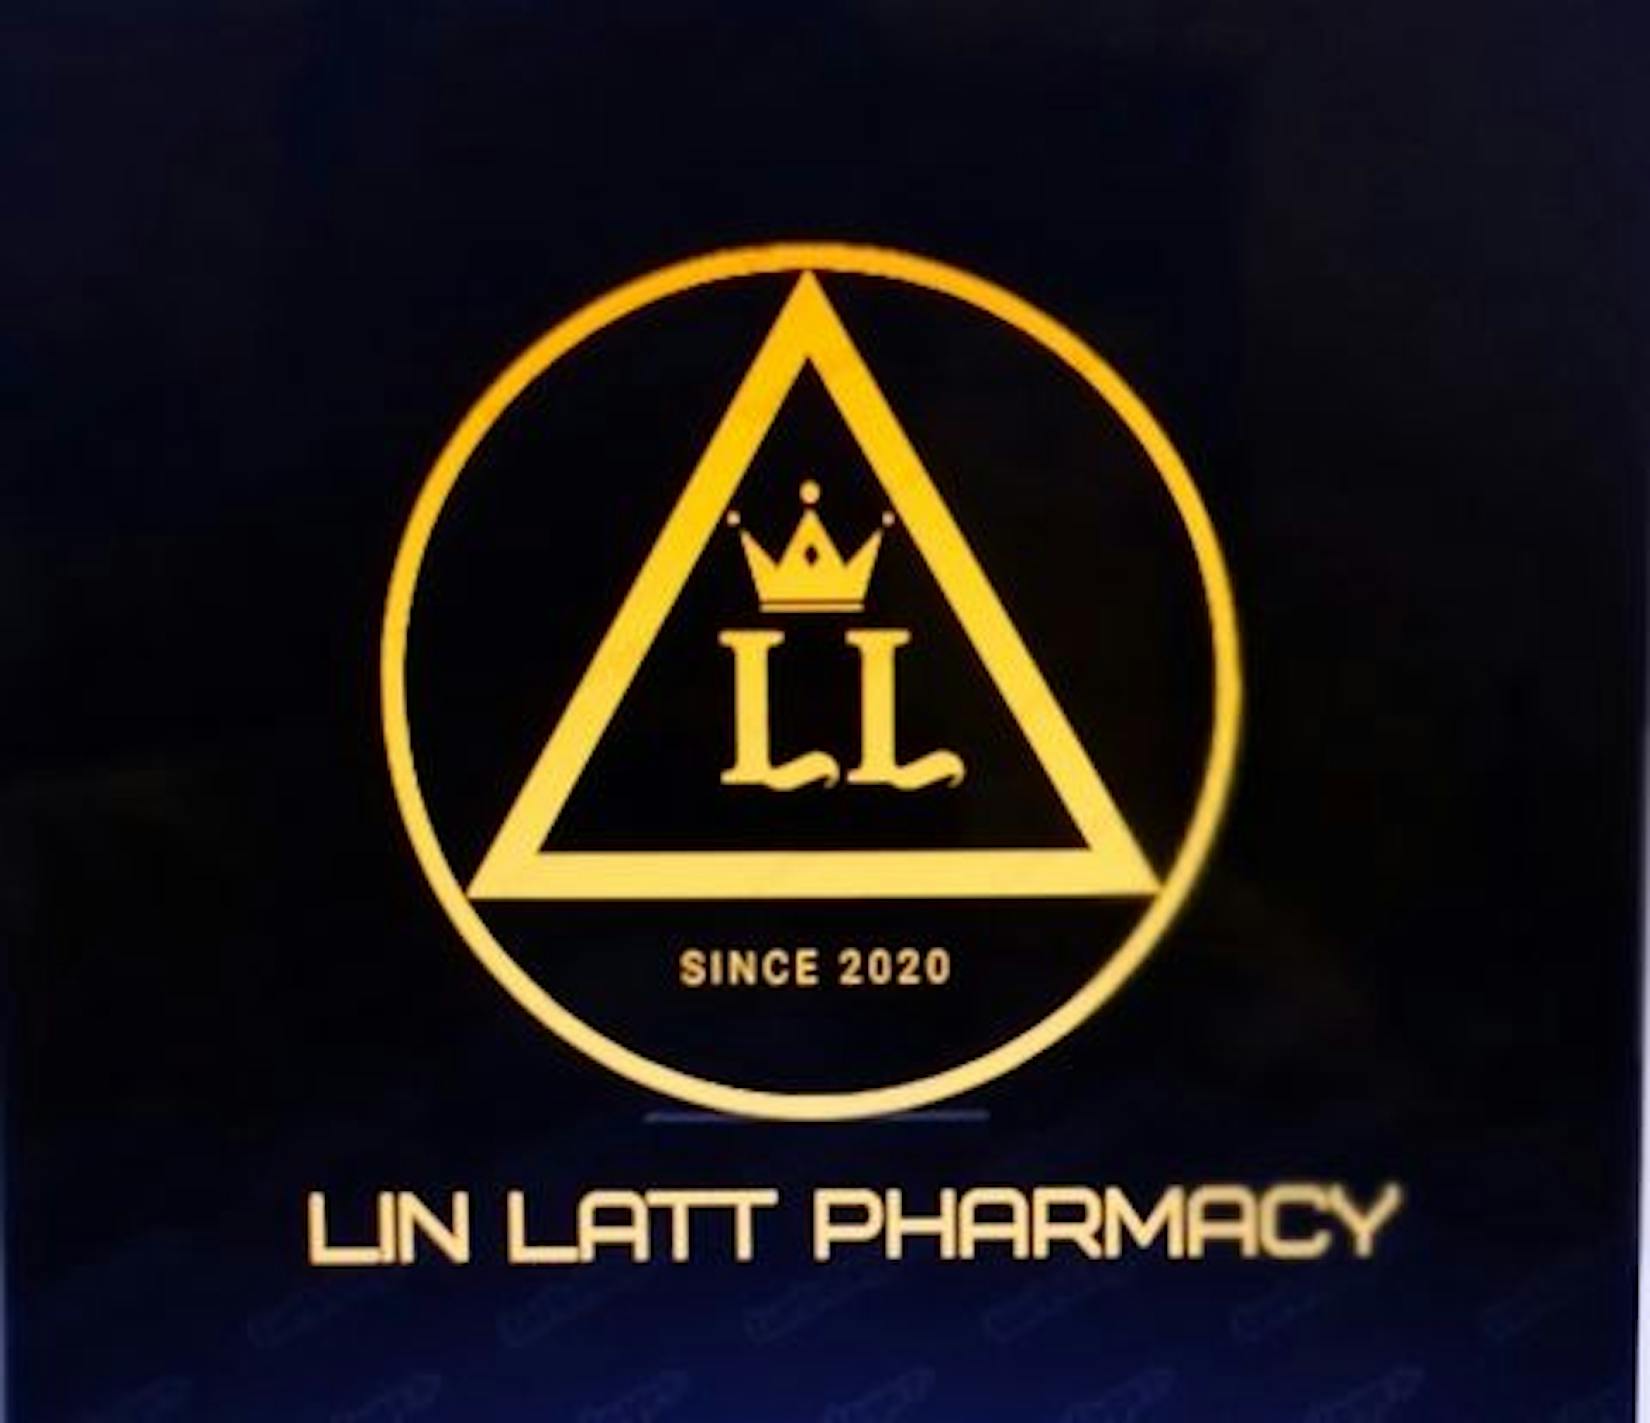 Lin latt pharmacy | Beauty